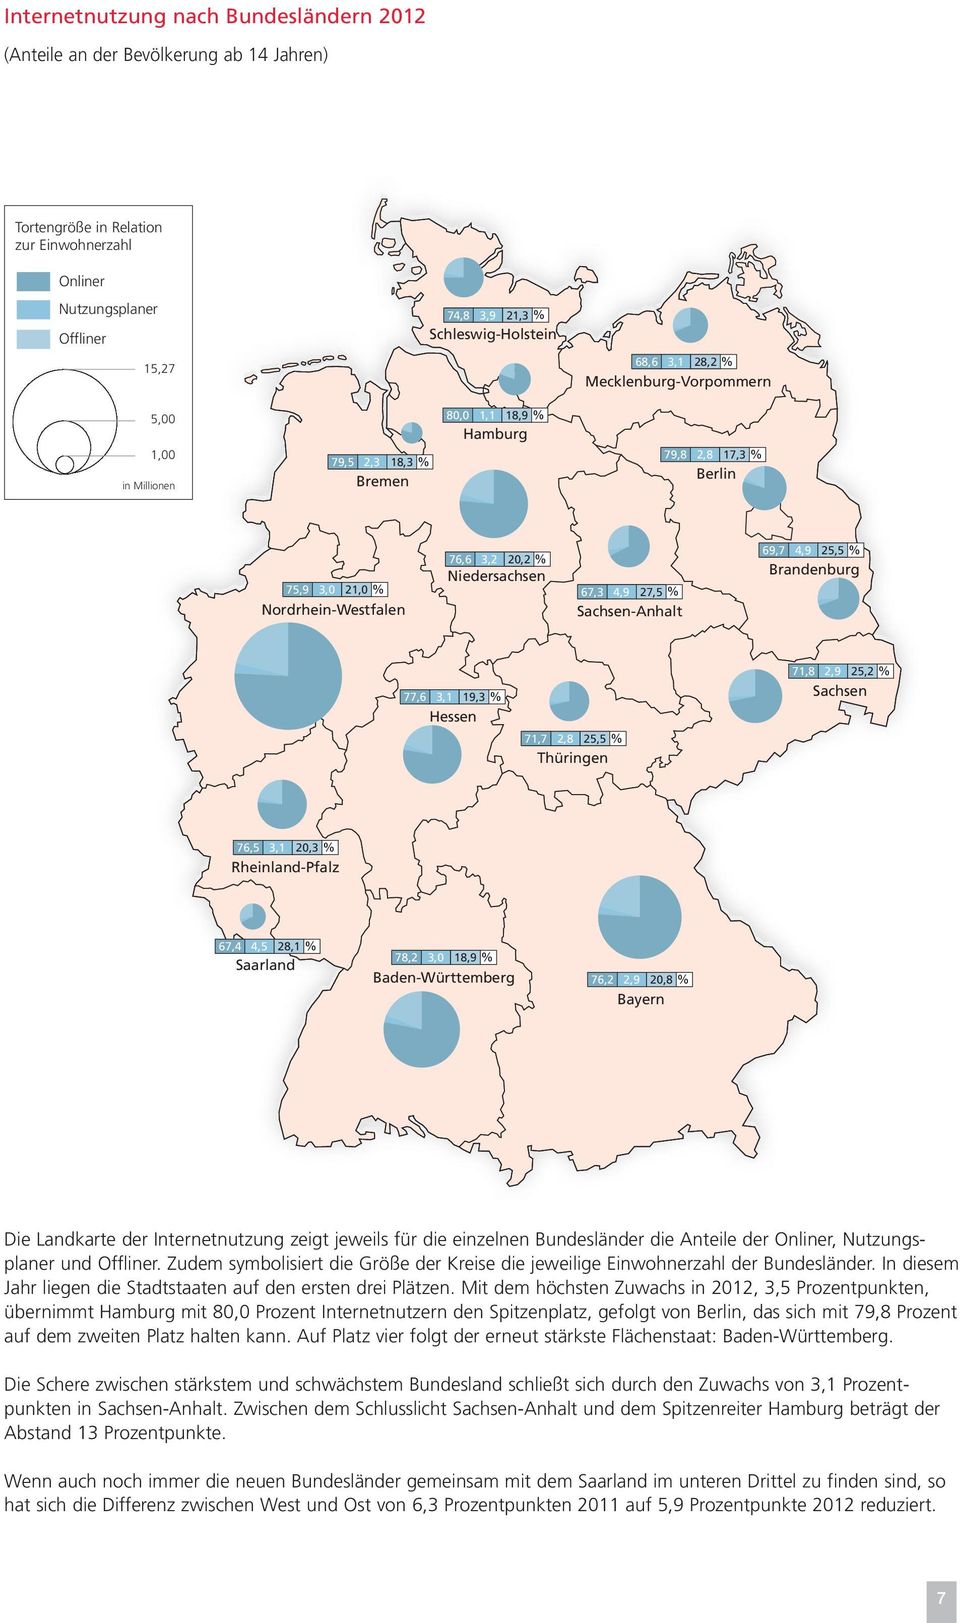 69,7 4,9 25,5 % Brandnburg 77,6 3,1 19,3 % Hssn 71,7 2,8 25,5 % Thüringn 71,8 2,9 25,2 % Sachsn 76,5 3,1 20,3 % Rhinland-Pfalz 67,4 4,5 28,1 % Saarland 78,2 3,0 18,9 % Badn-Württmbrg 76,2 2,9 20,8 %